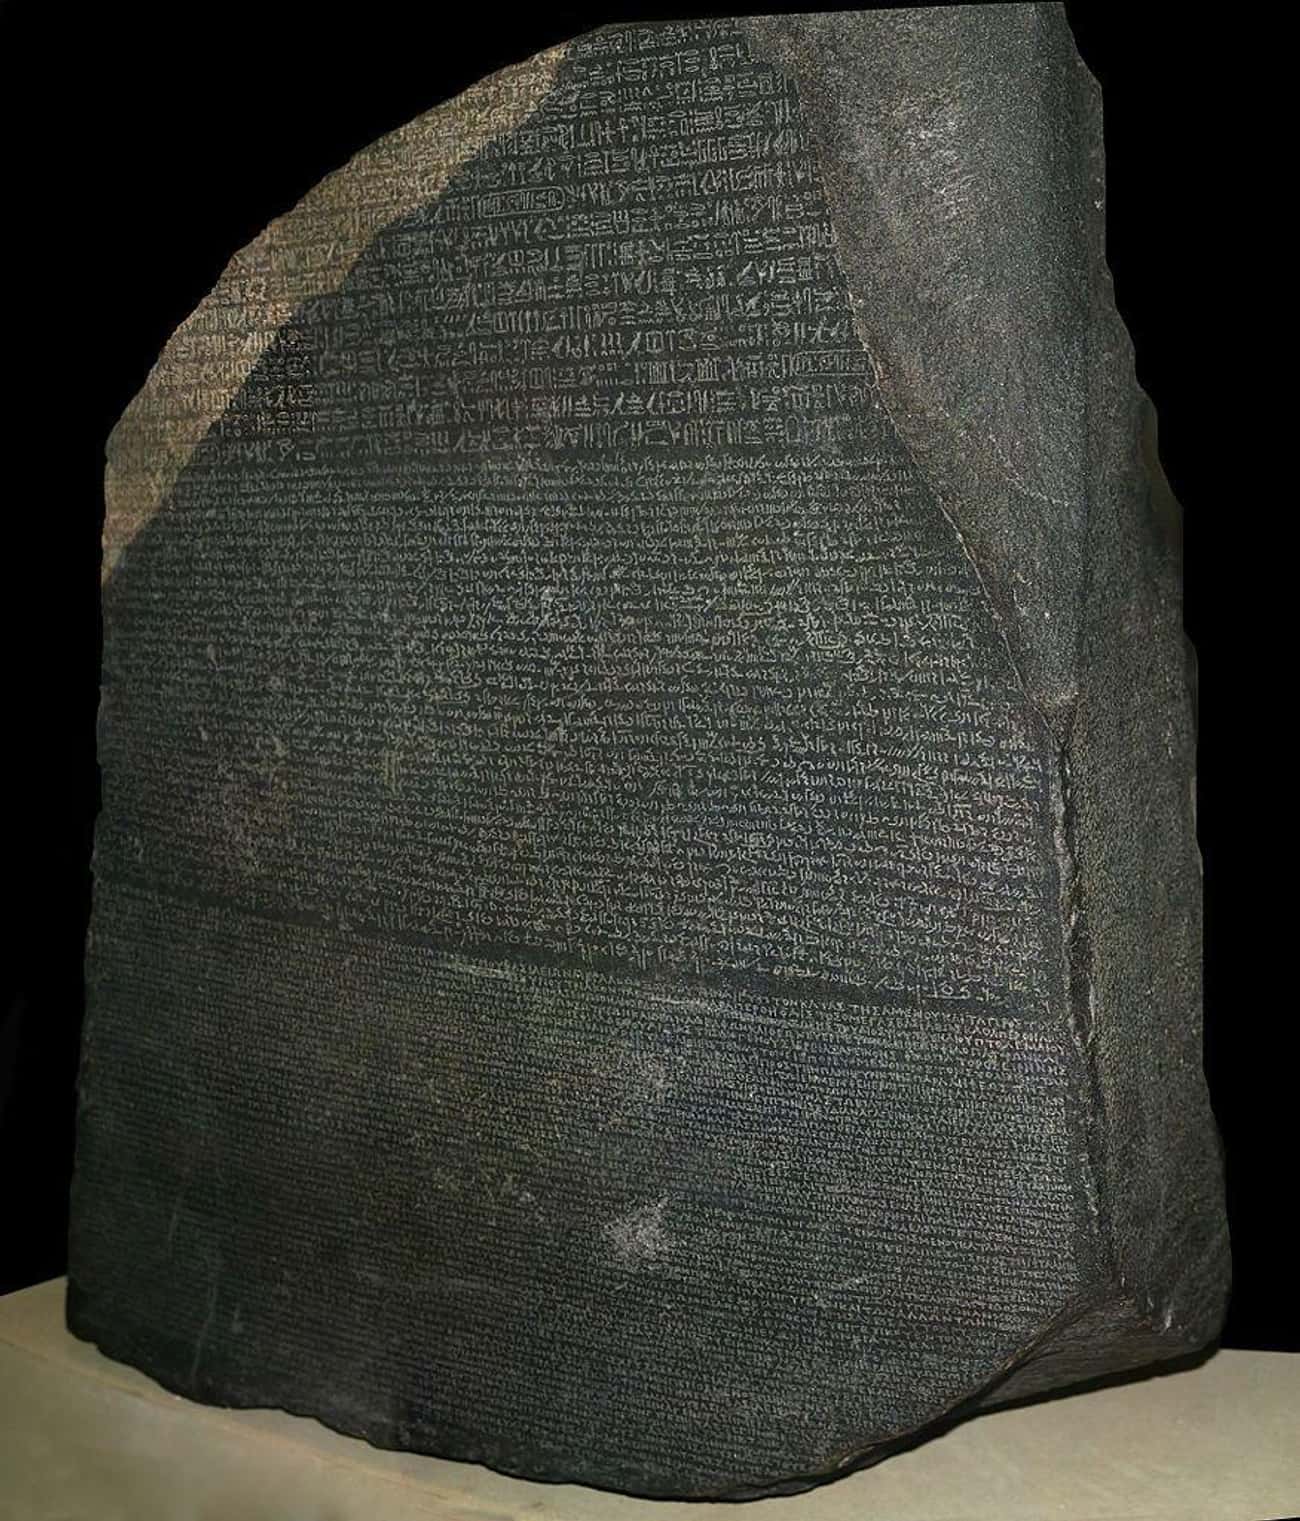 The Rosetta Stone (c. 196 BC)